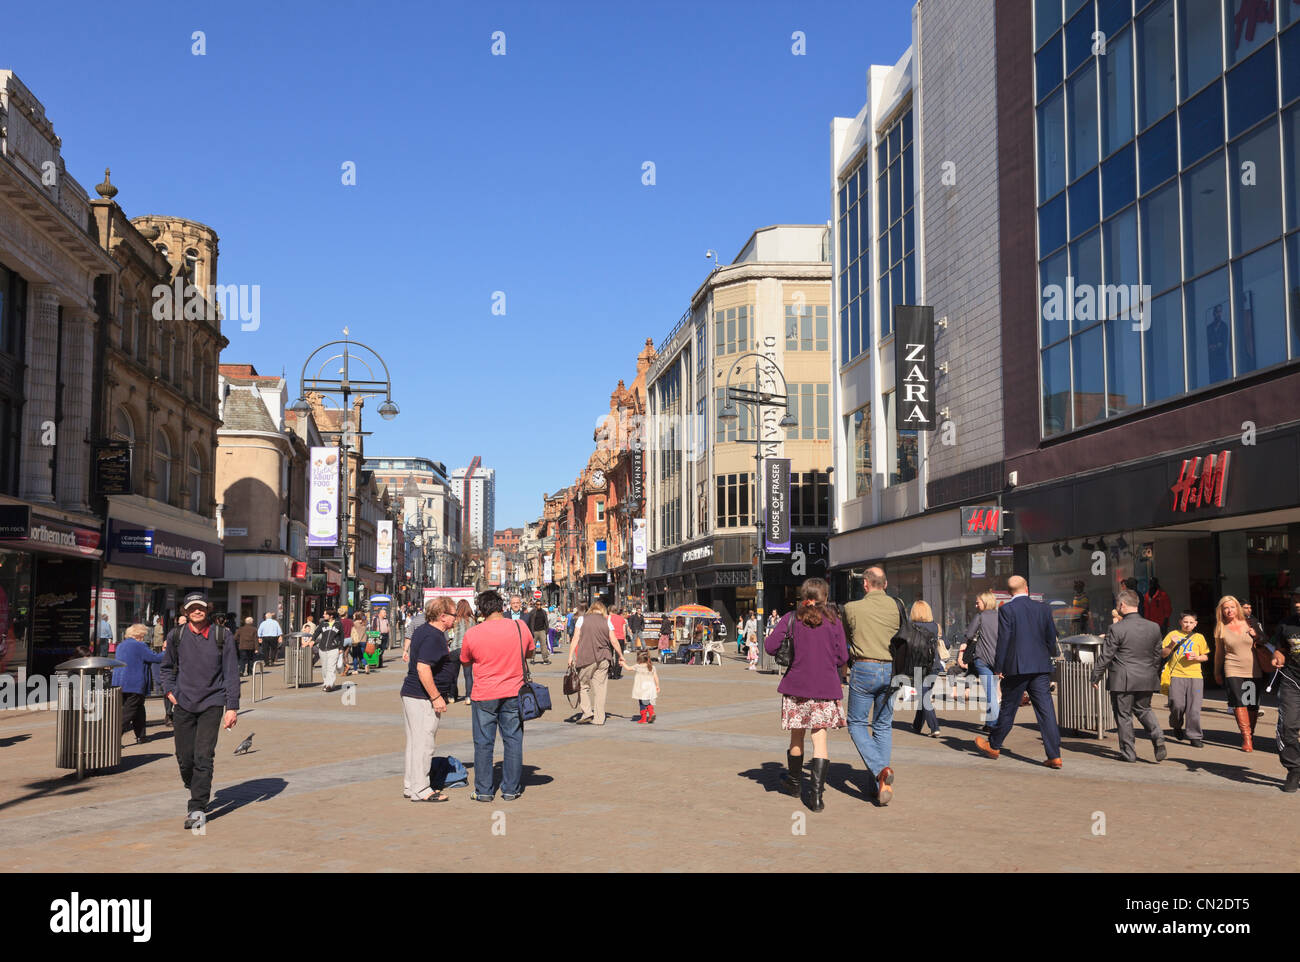 Scène de rue principale animée avec les gens de shopping dans le centre ville zone piétonne. Briggate, Leeds, West Yorkshire, England, UK, Grande-Bretagne Banque D'Images